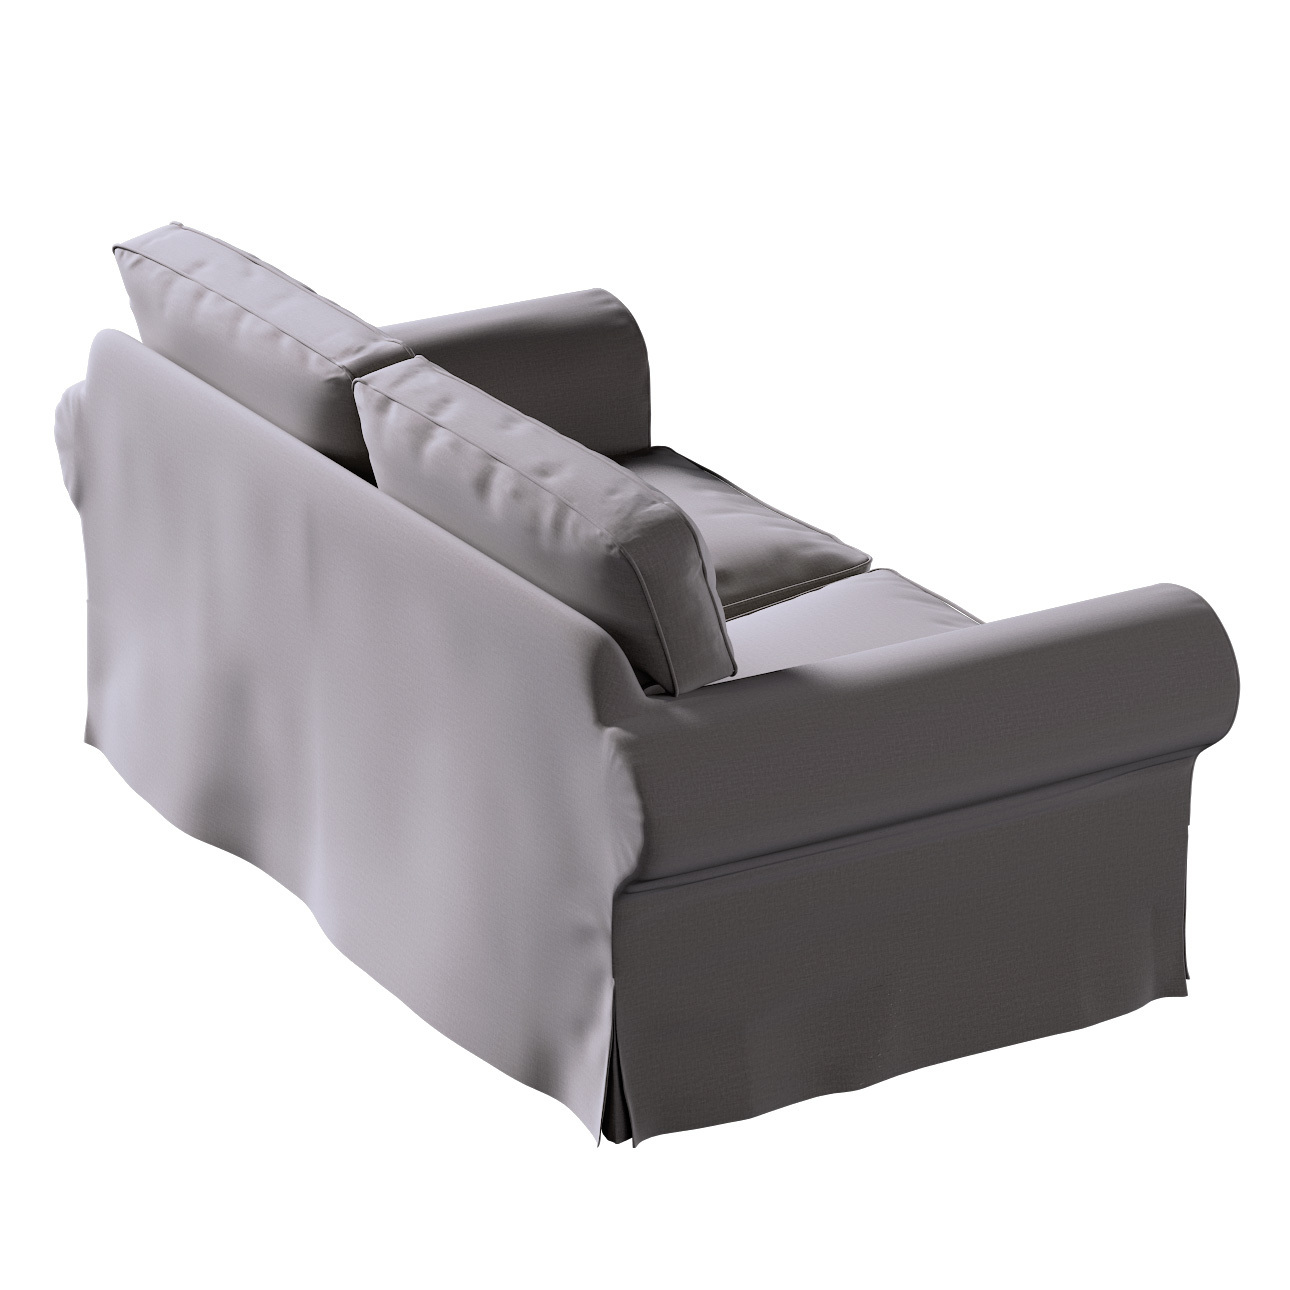 Bezug für Ektorp 2-Sitzer Schlafsofa NEUES Modell, braun, Sofabezug für  Ek günstig online kaufen